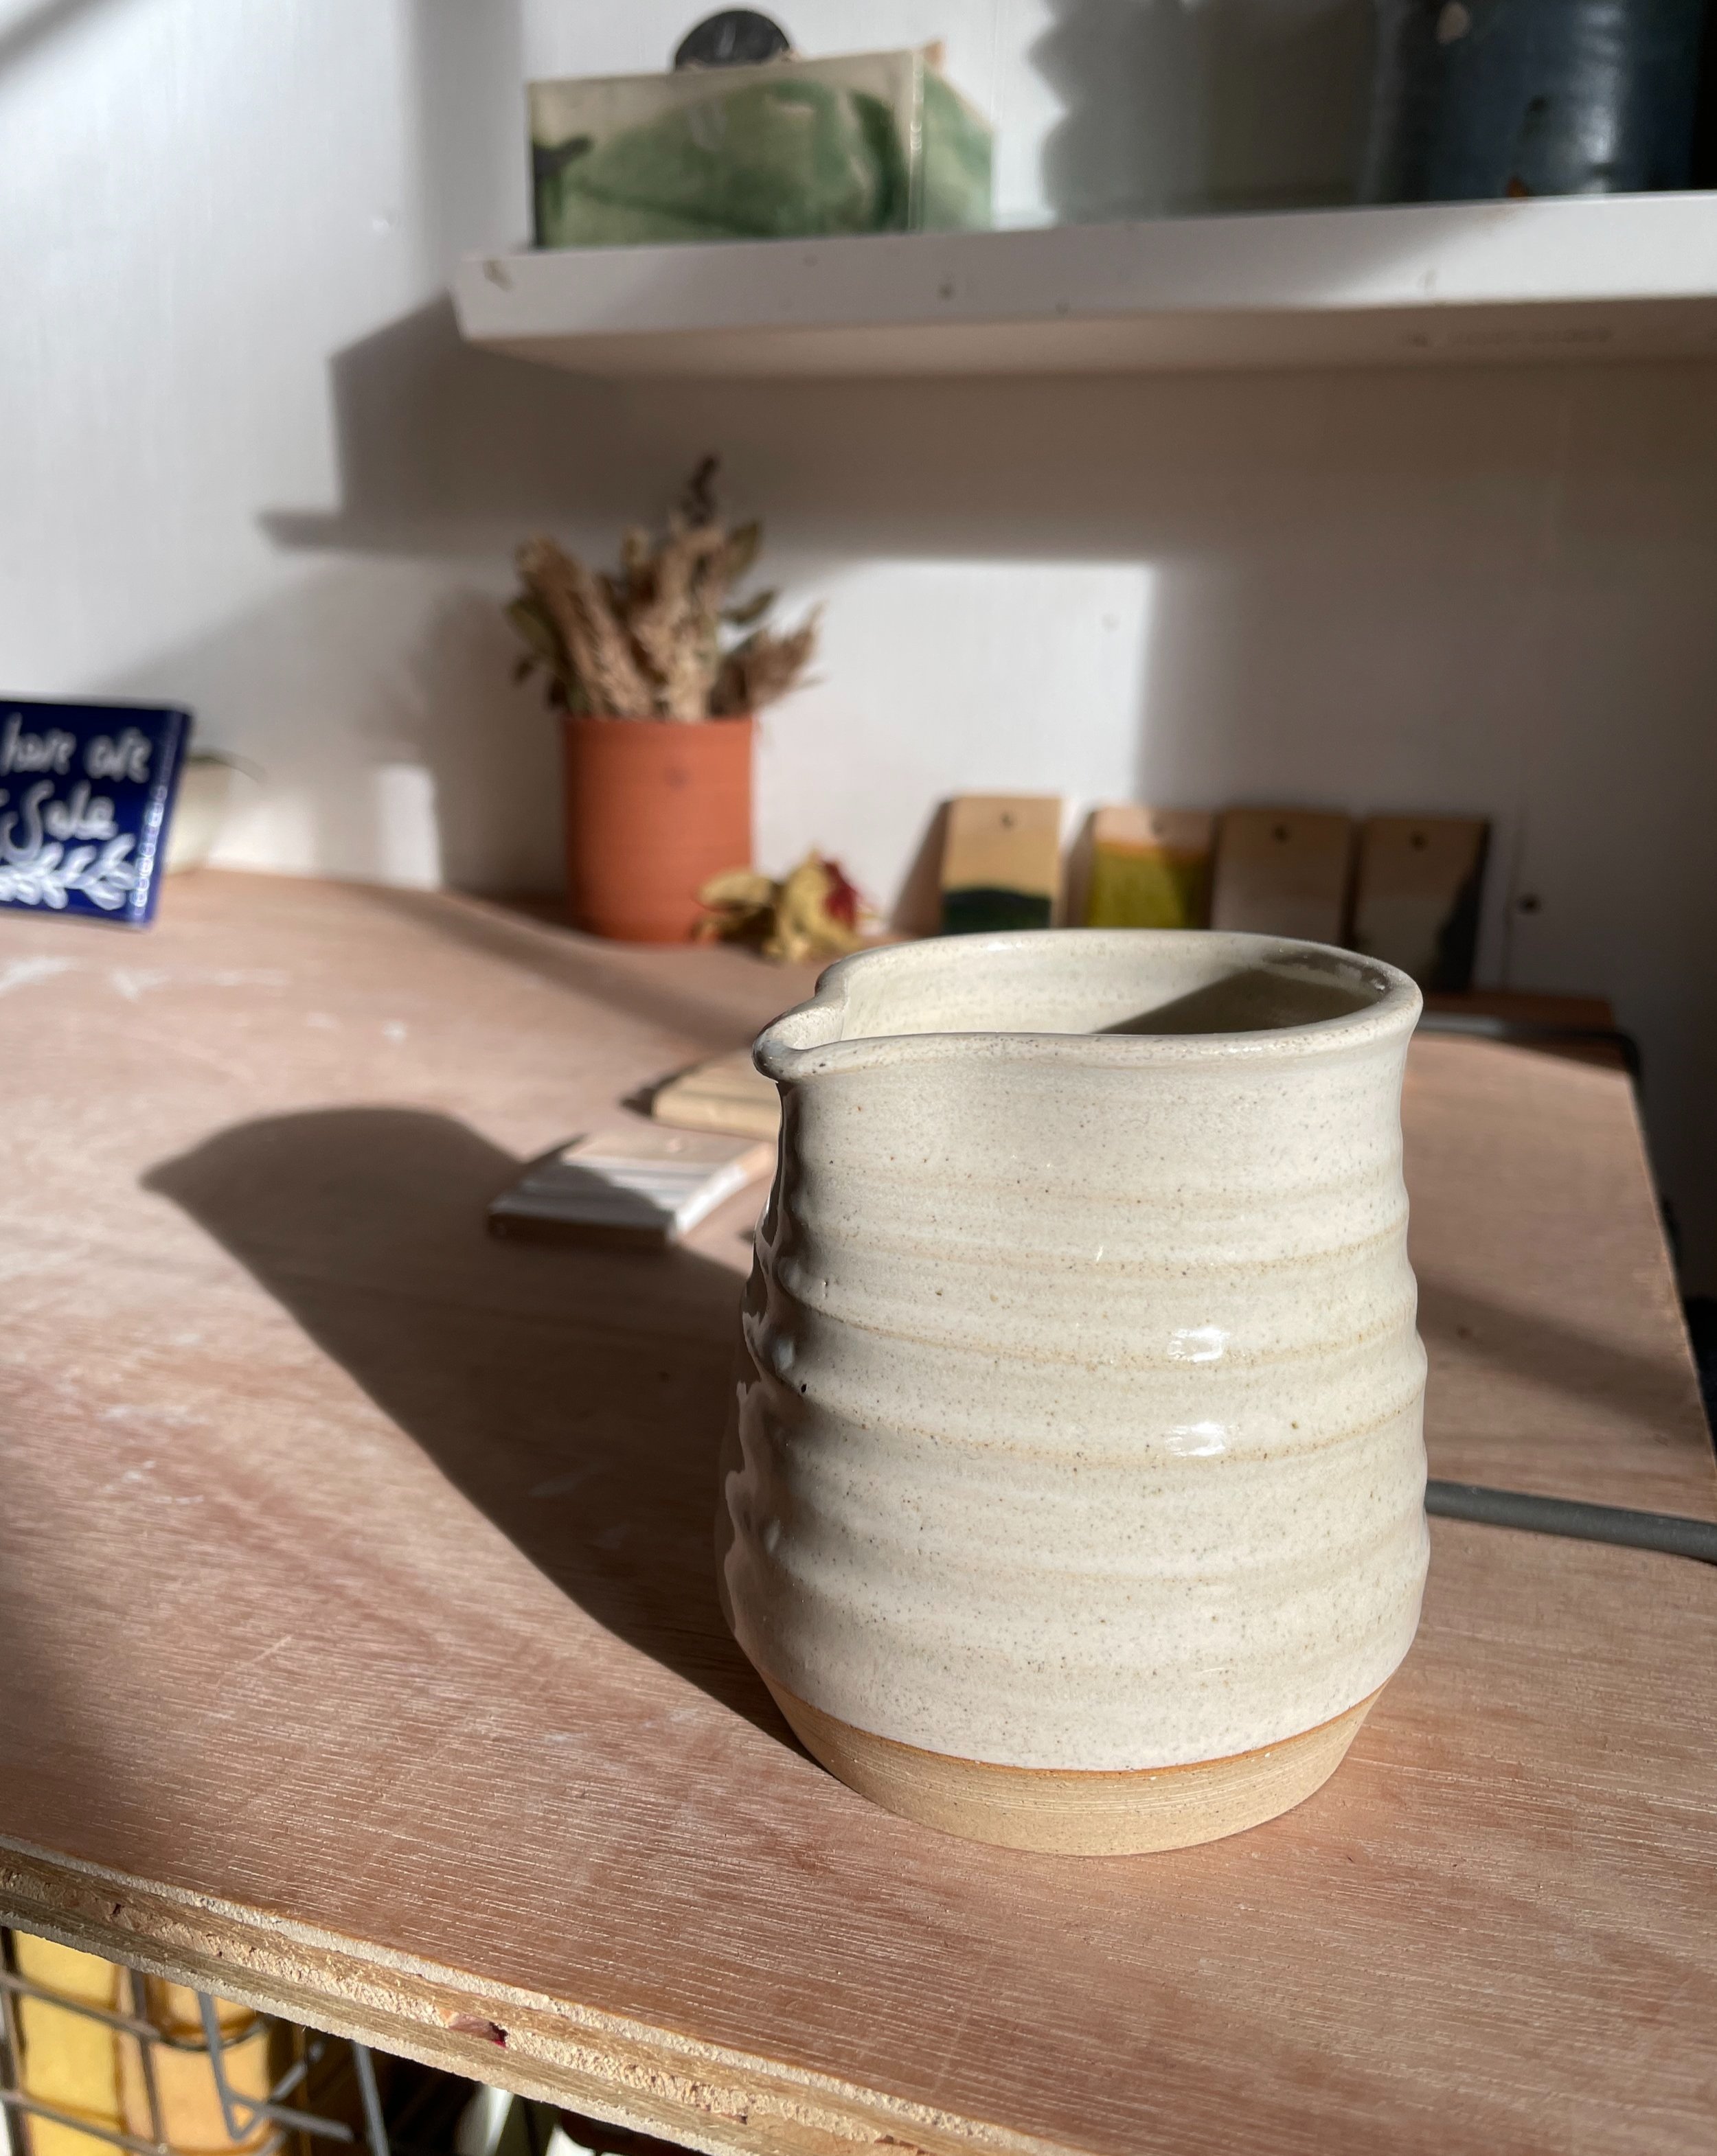 Ceramic jug in the sunlight